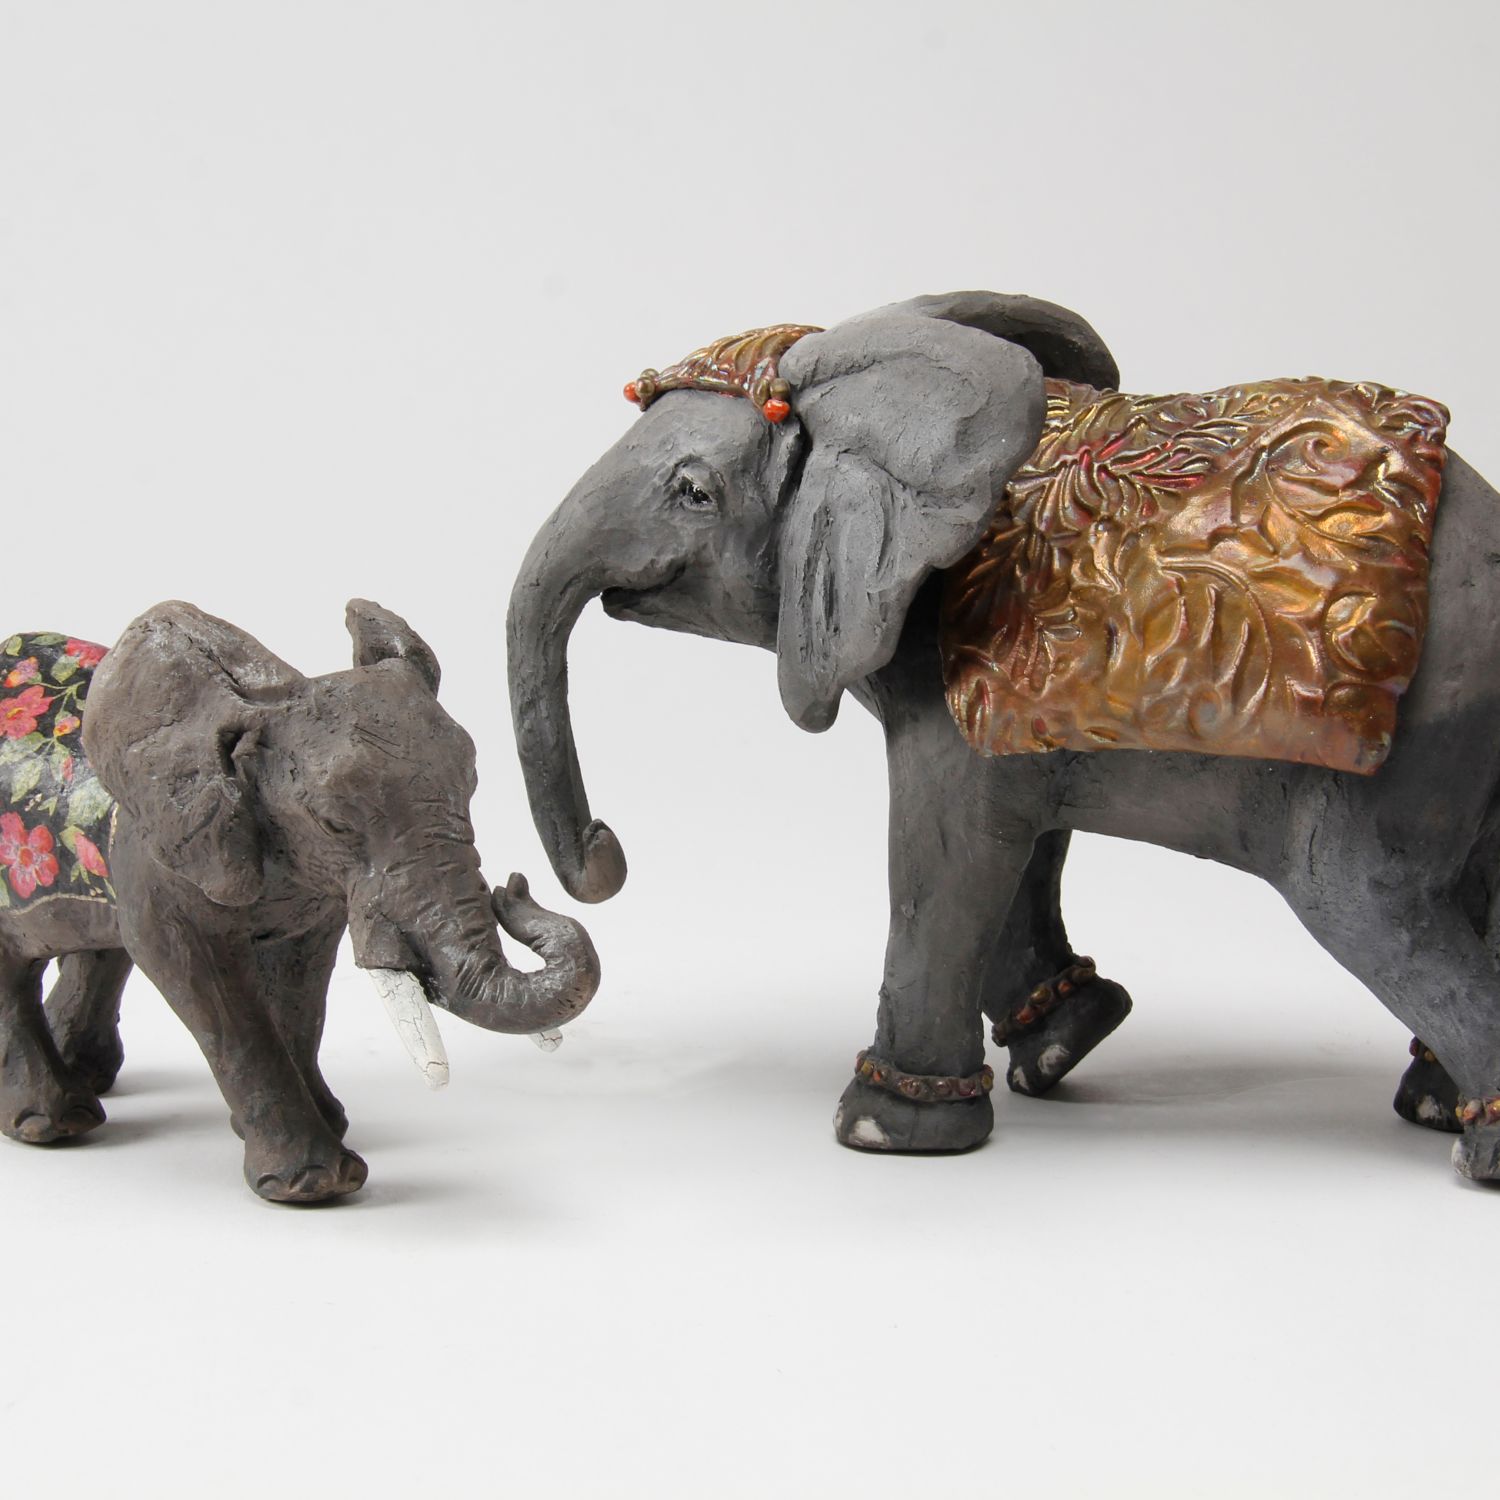 Zsuzsa Monostory: Elephant Product Image 3 of 3